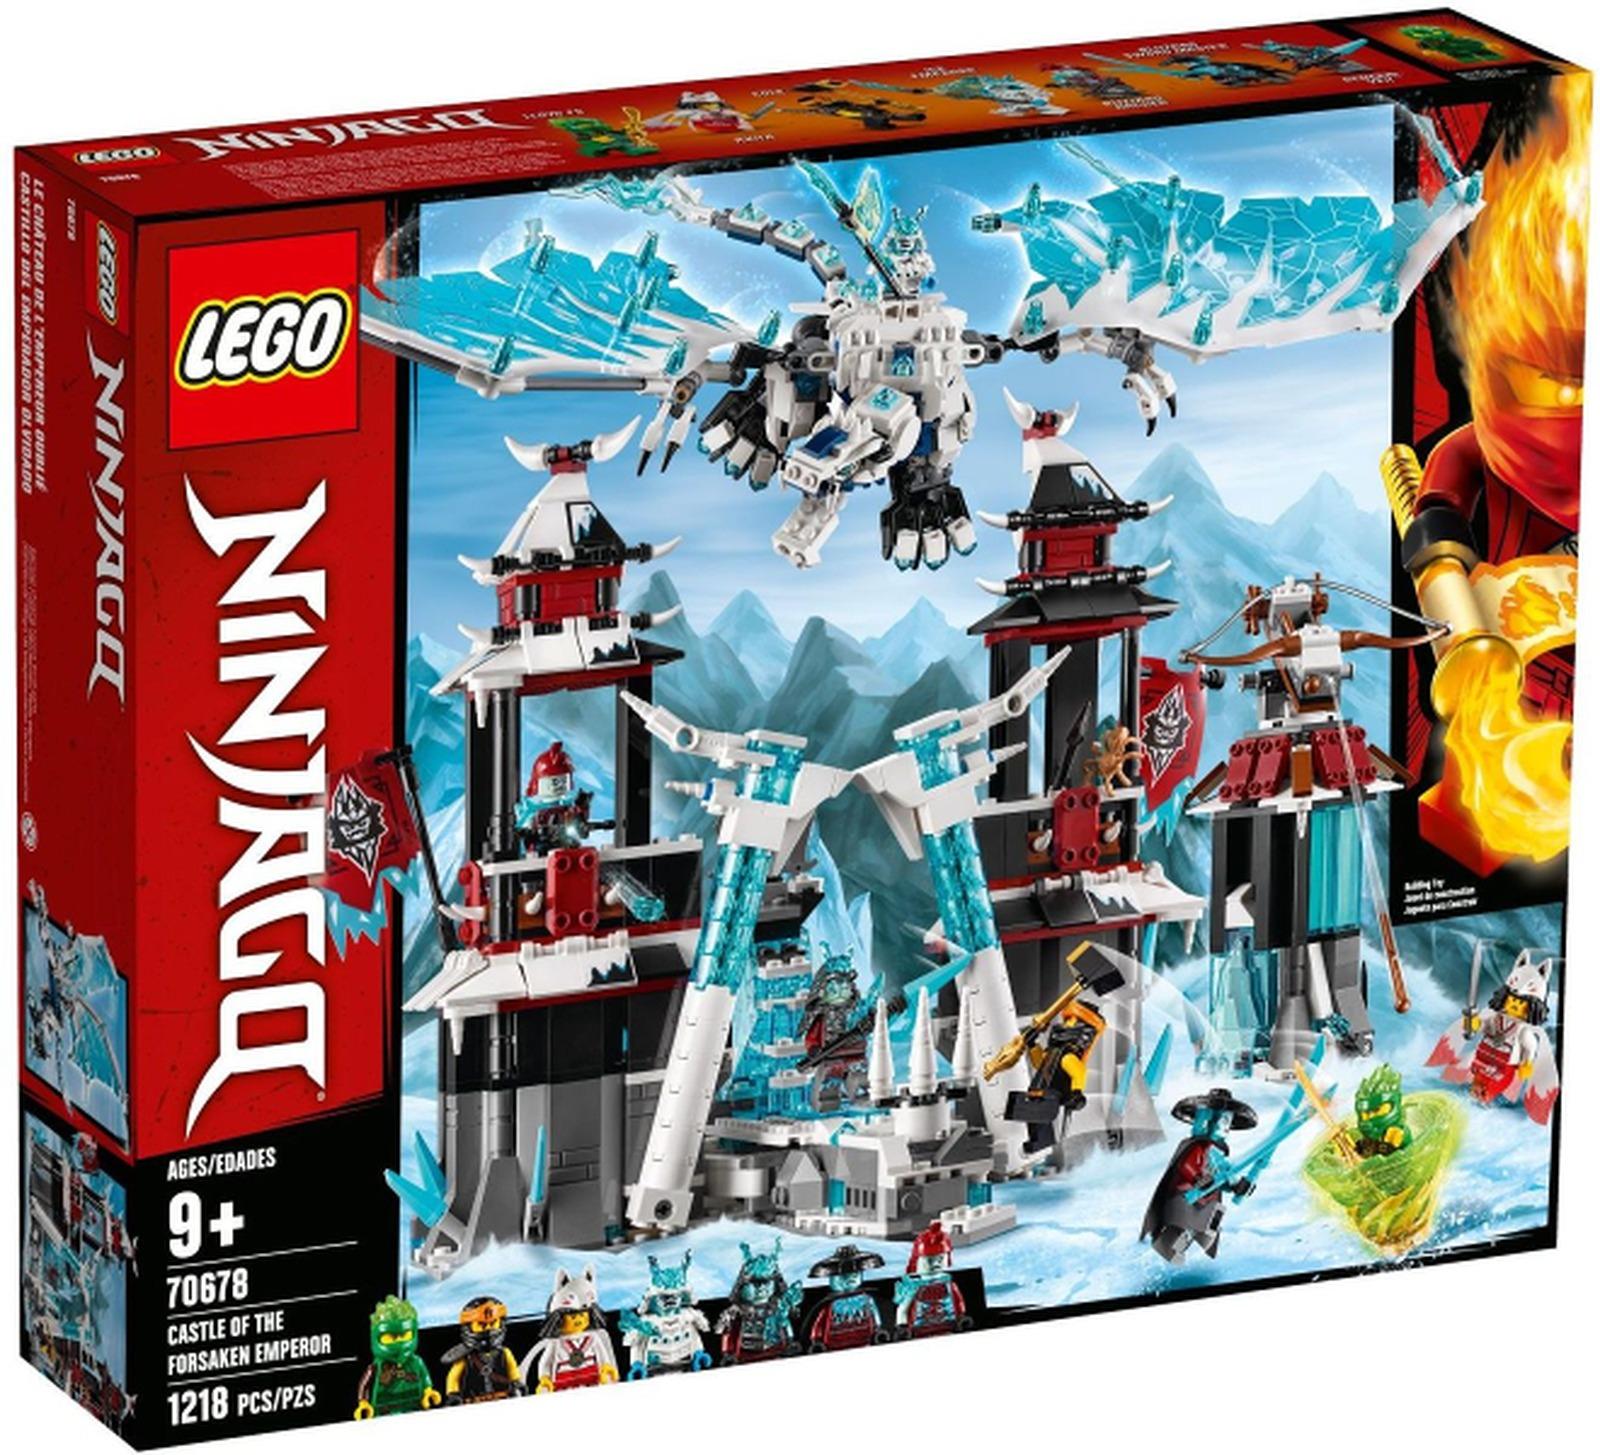 LEGO 70678 VYPREDANÉ v 2020 Ninjago Secrets of the Forbidden Spinjitzu - Hračky